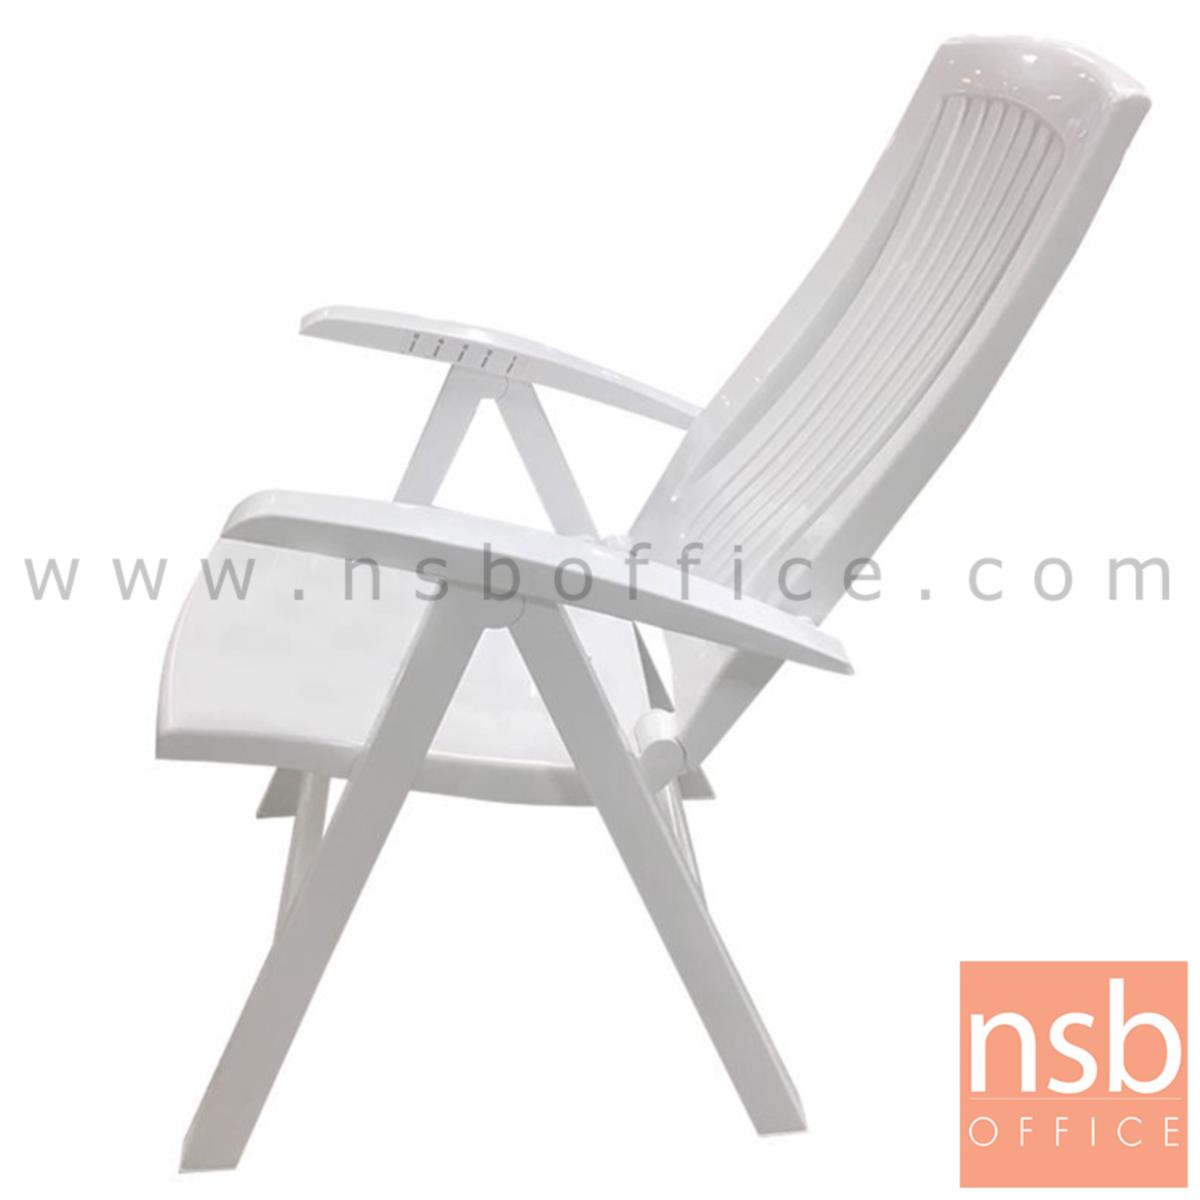 เก้าอี้พับพลาสติกเอนนอน รุ่น Mackey (แมคคีย์) ขนาด 63W*110.5H cm. 